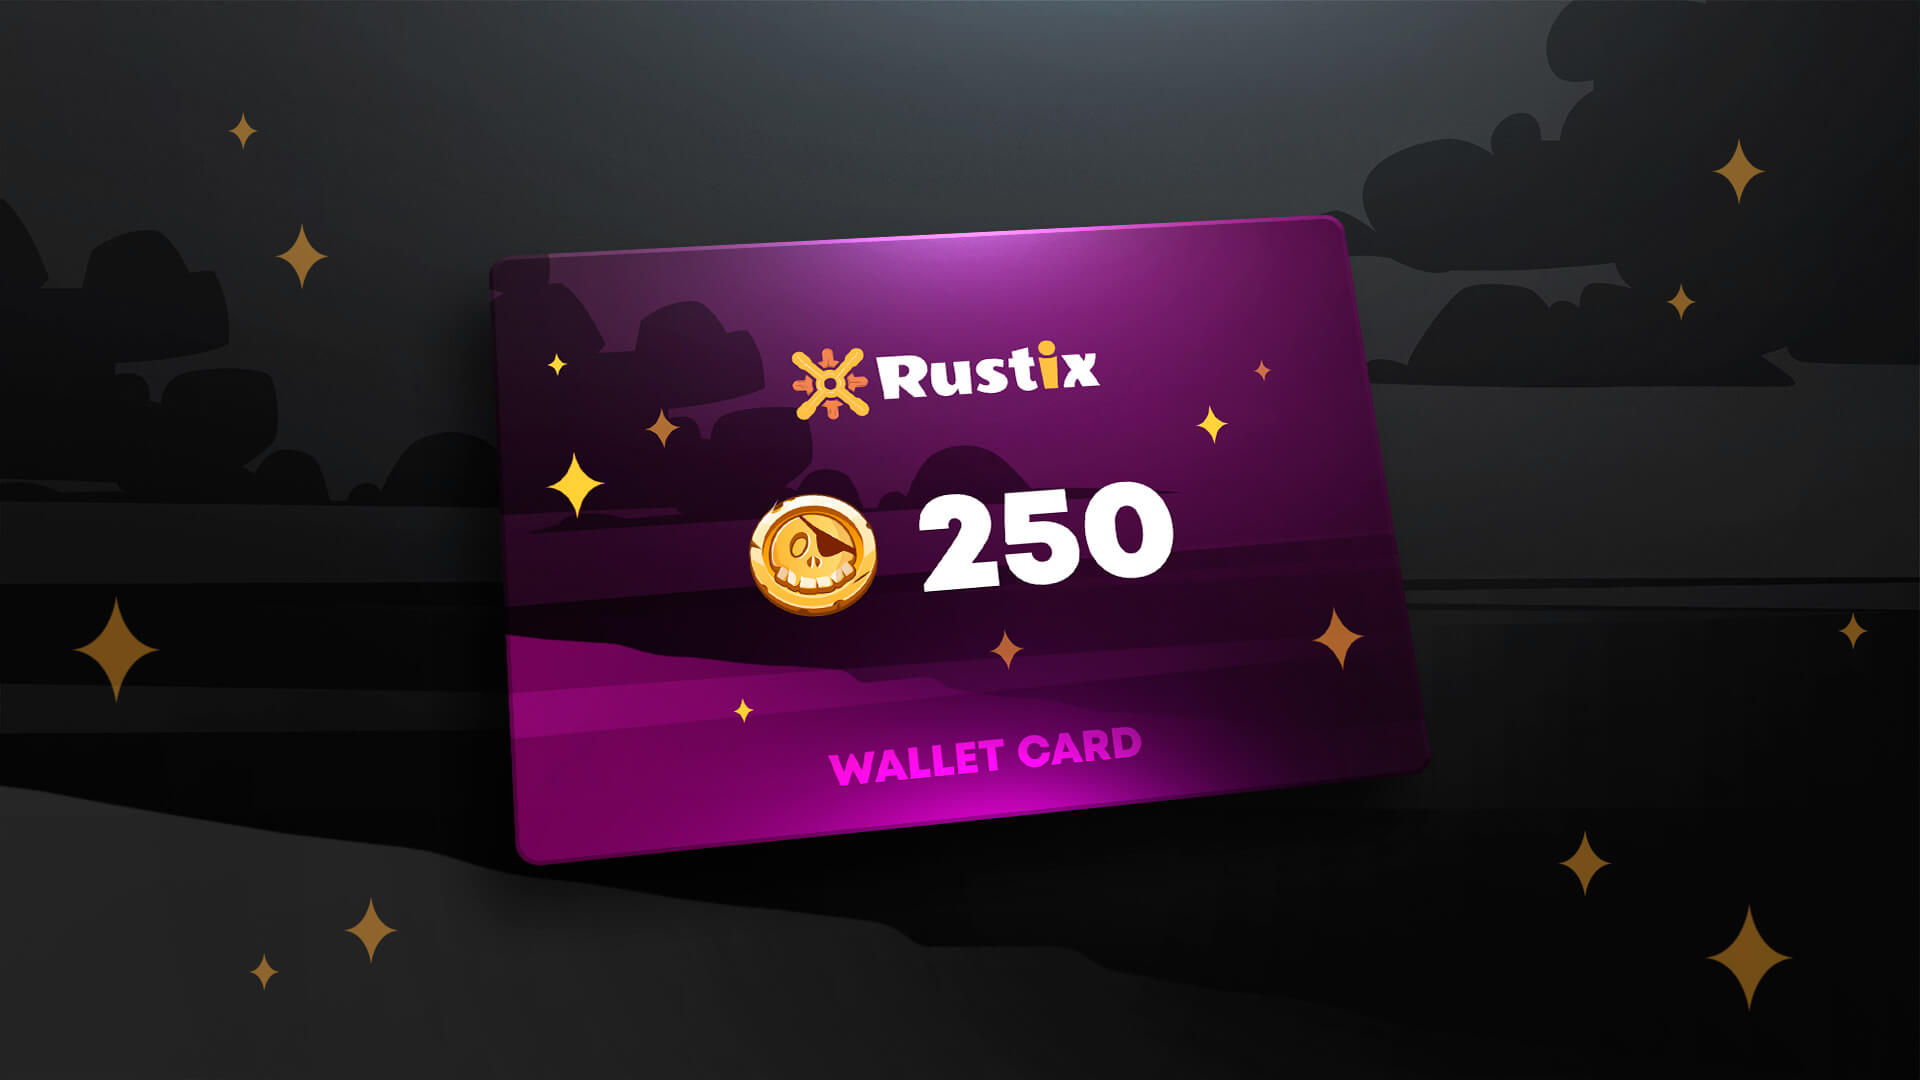 Rustix.io 250 USD Wallet Card Code 274.57 usd